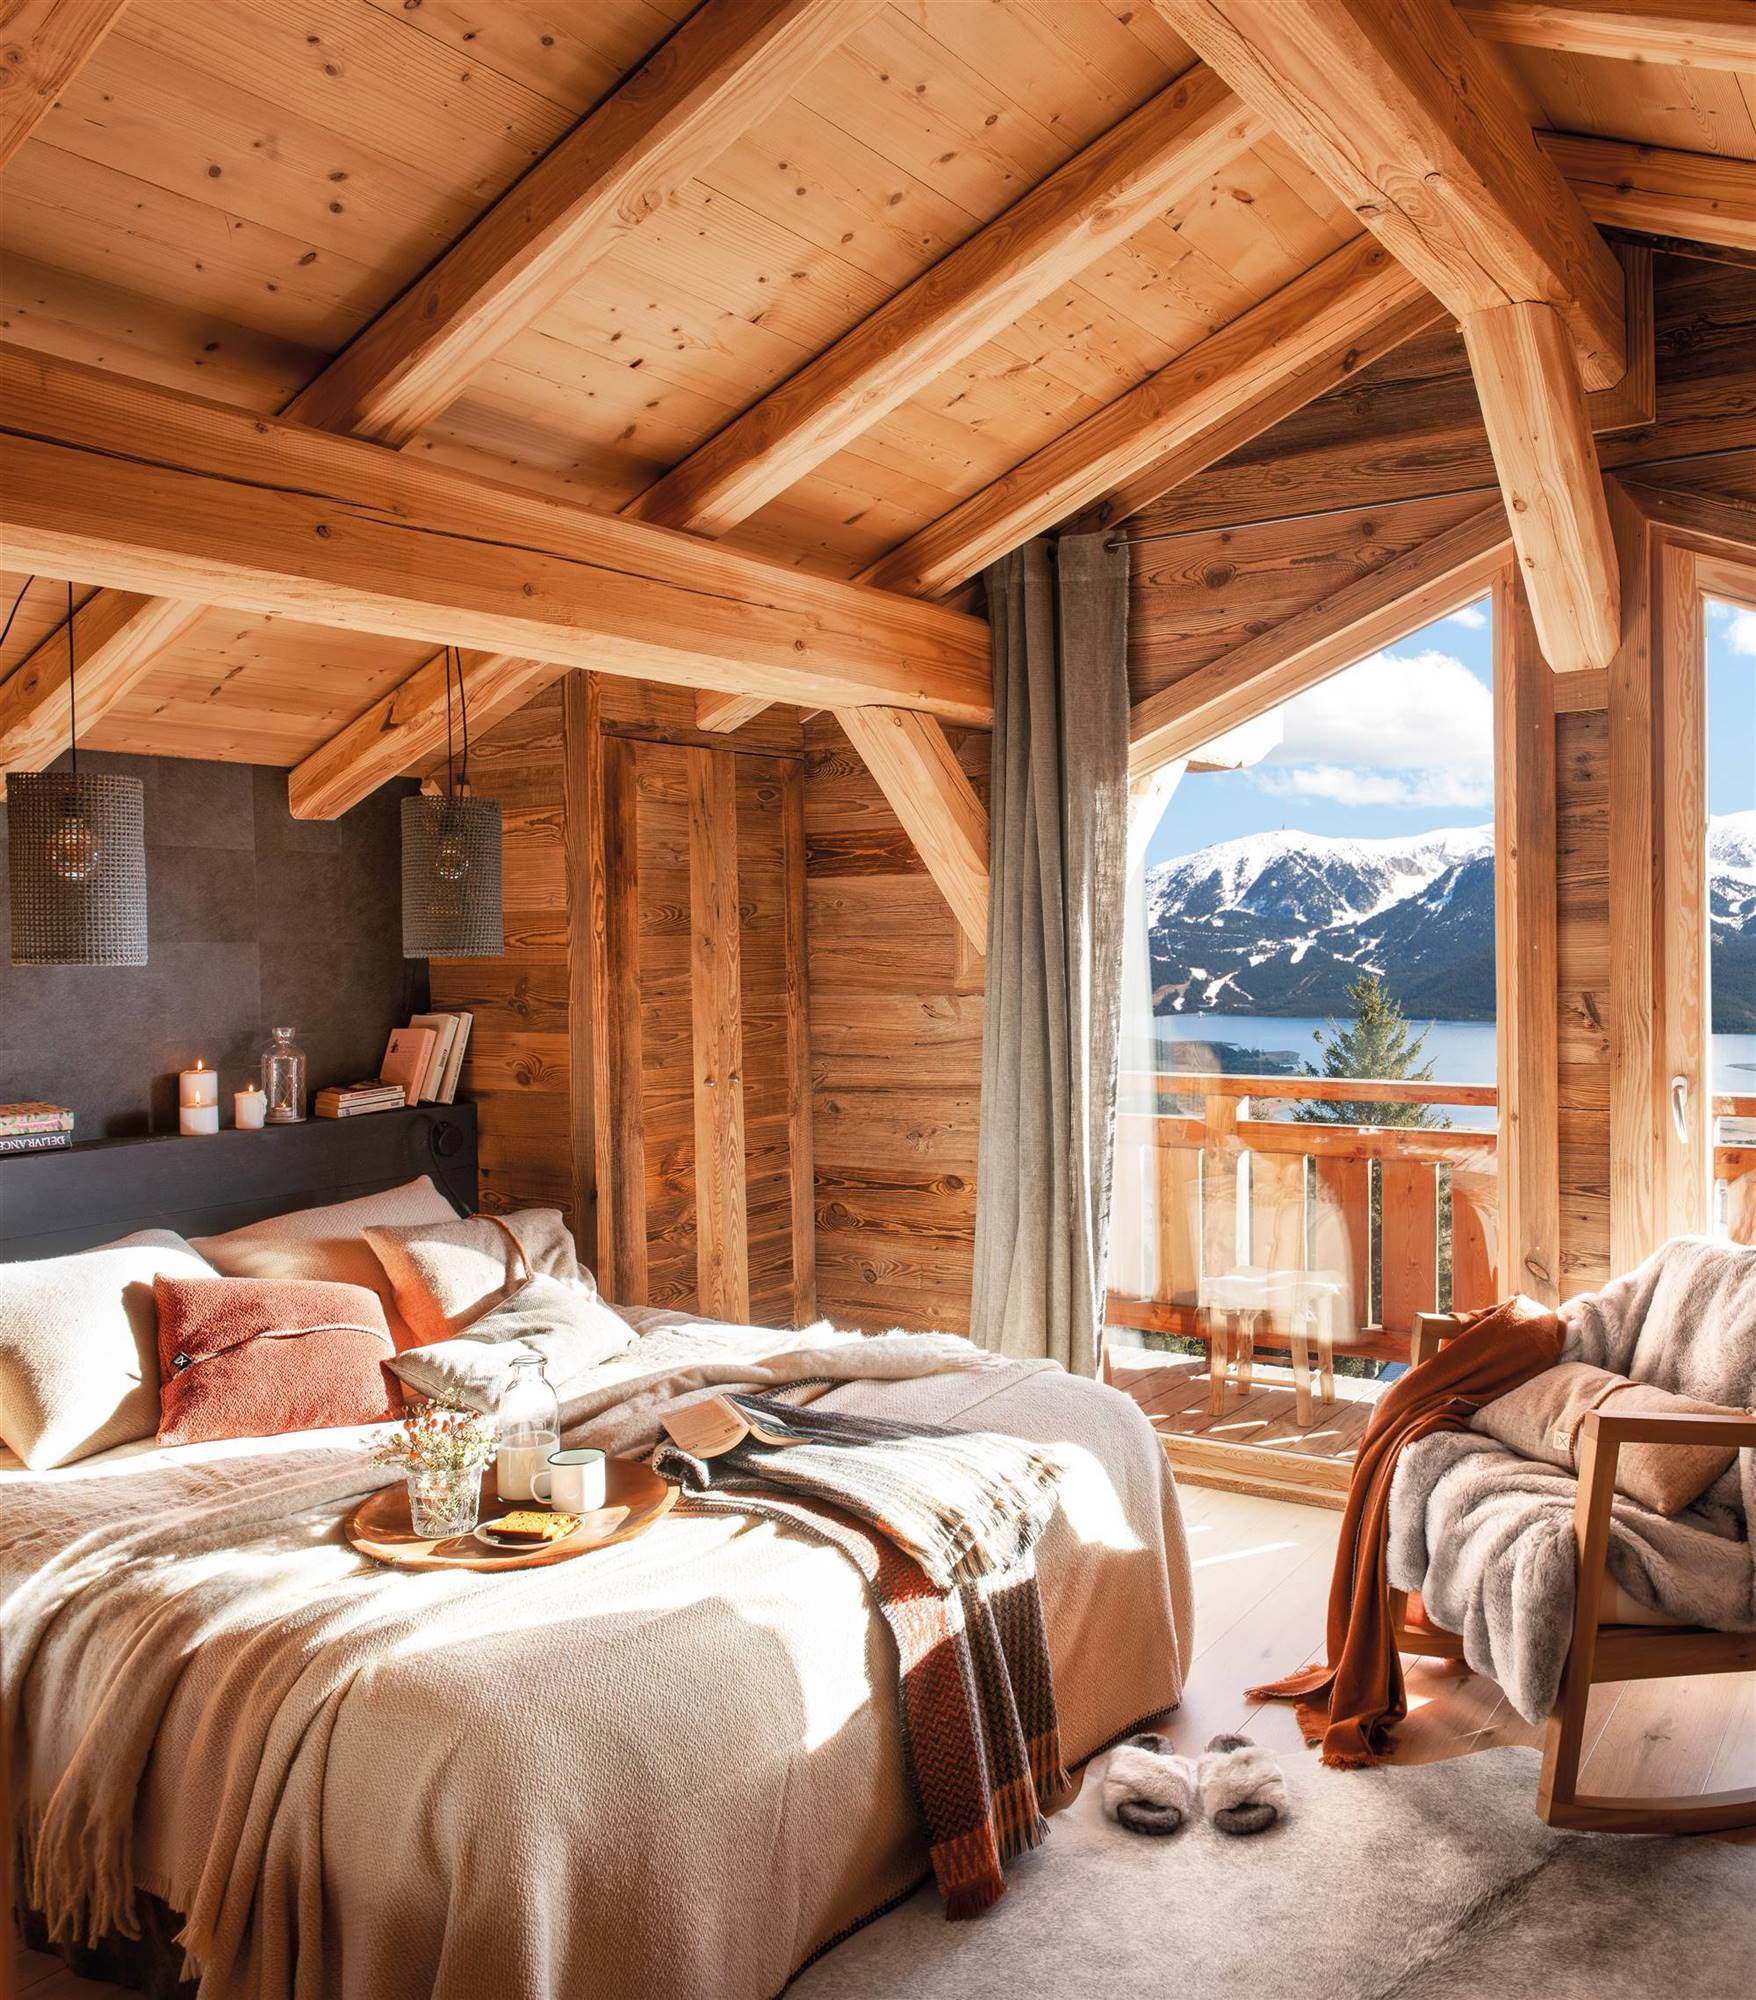 Dormitorio rústico con techo abuhardillado de madera con ropa de cama de lino. 